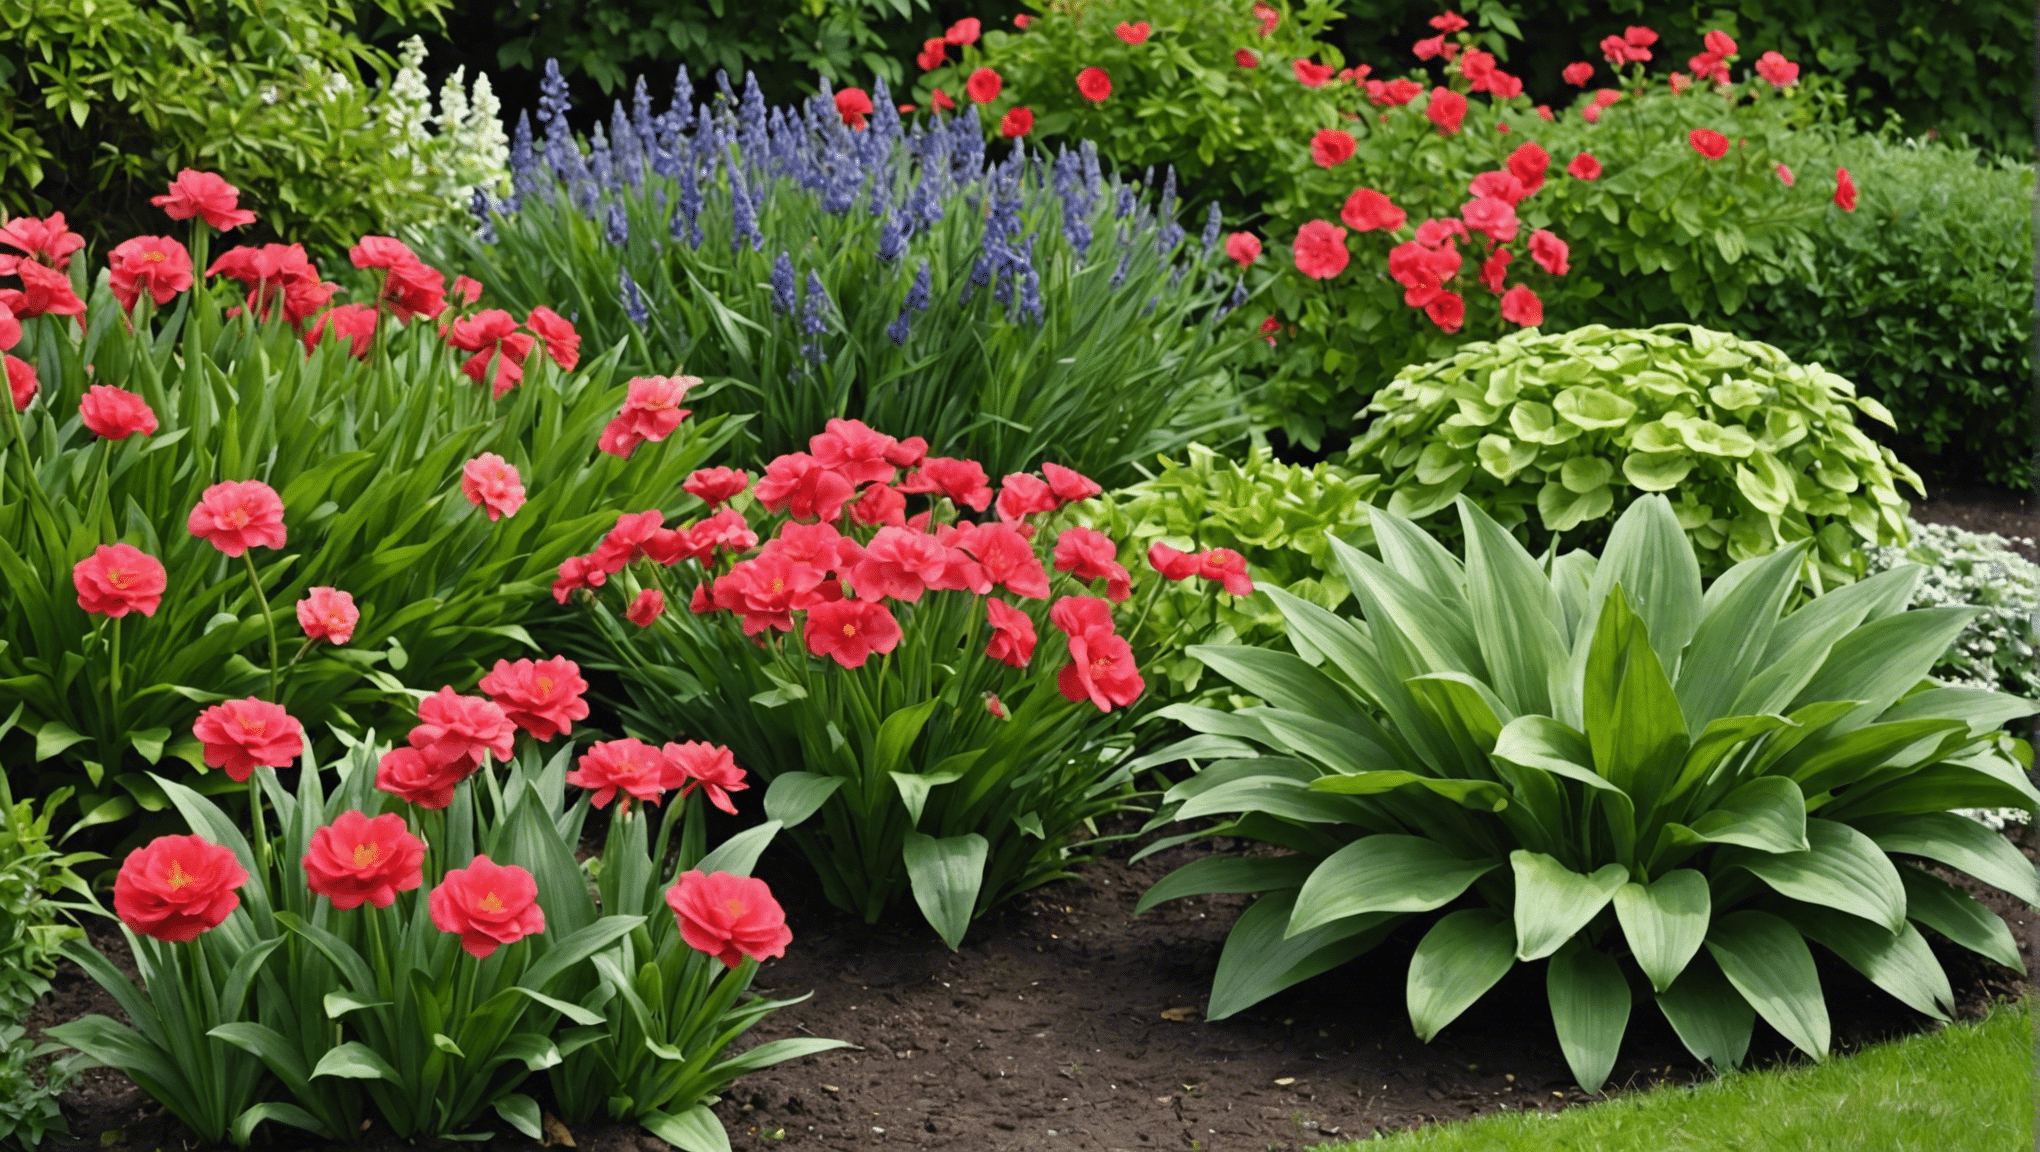 découvrez notre sélection de plantes pour embellir votre jardin ce printemps et profiter d'une explosion de couleurs et de parfums dans votre espace extérieur.